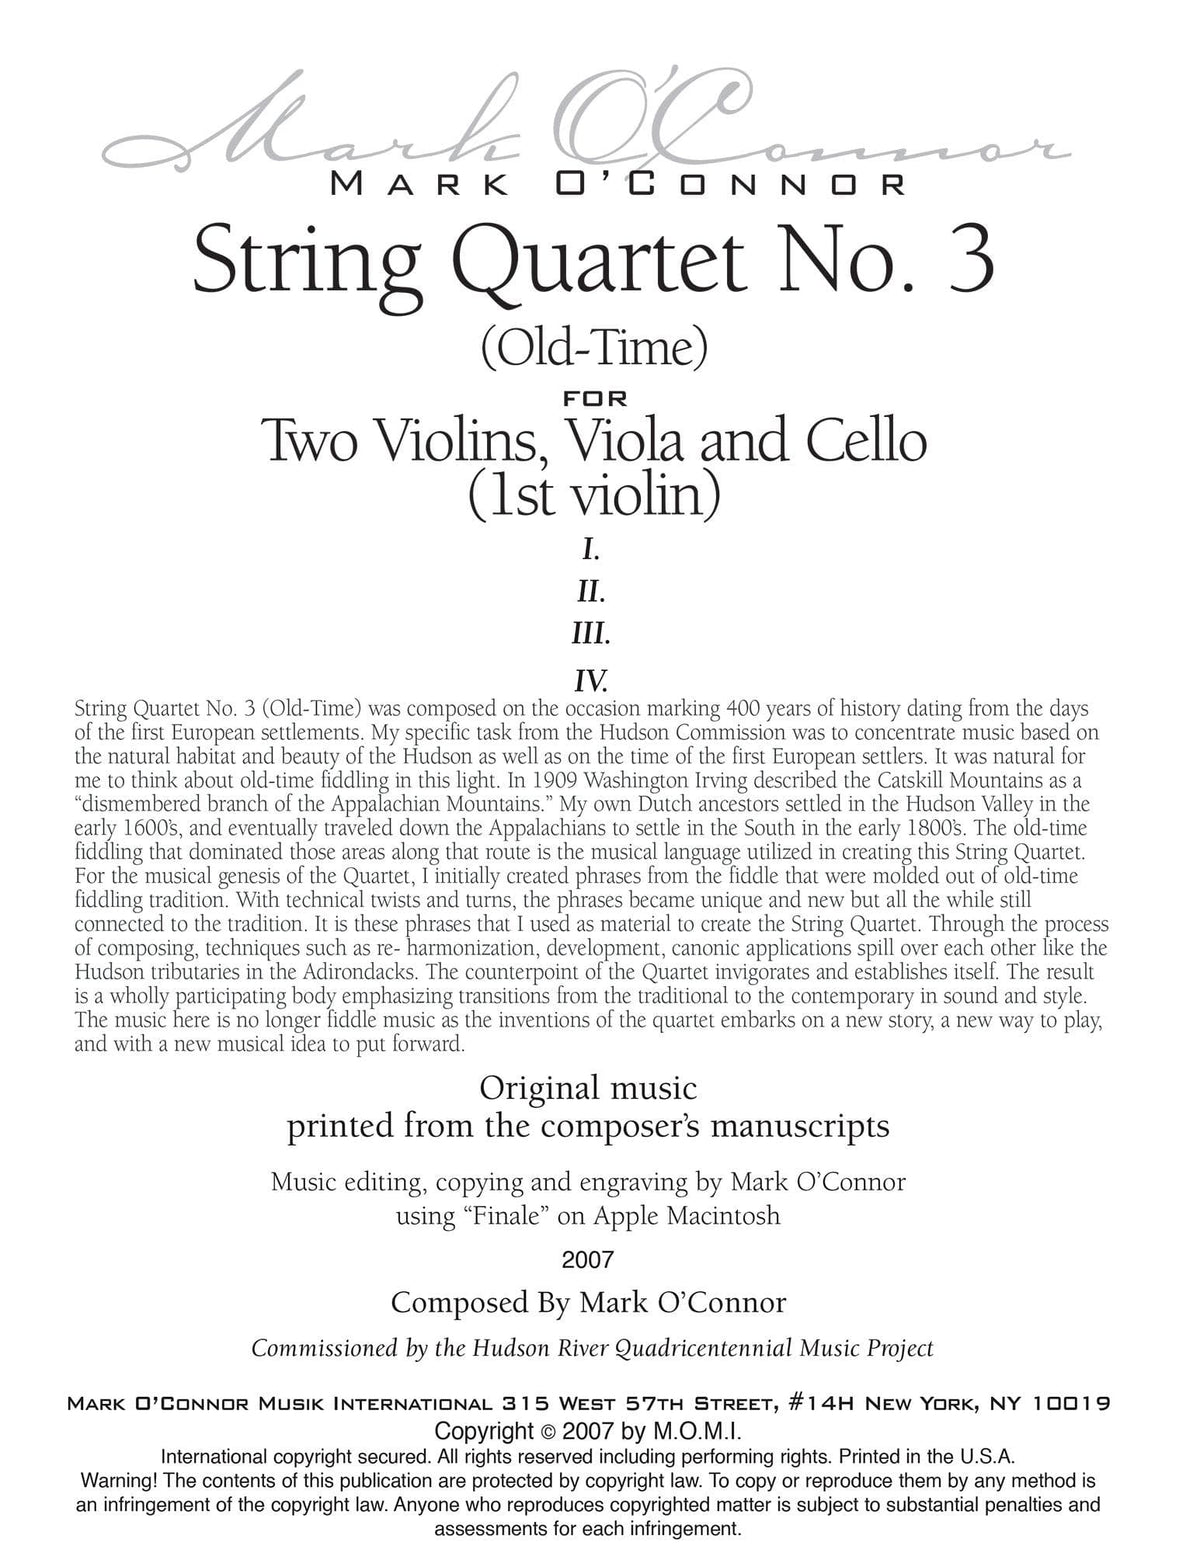 O'Connor, Mark - String Quartet No. 3 (Old-Time) for 2 Violins, Viola, and Cello - Violin 1 - Digital Download